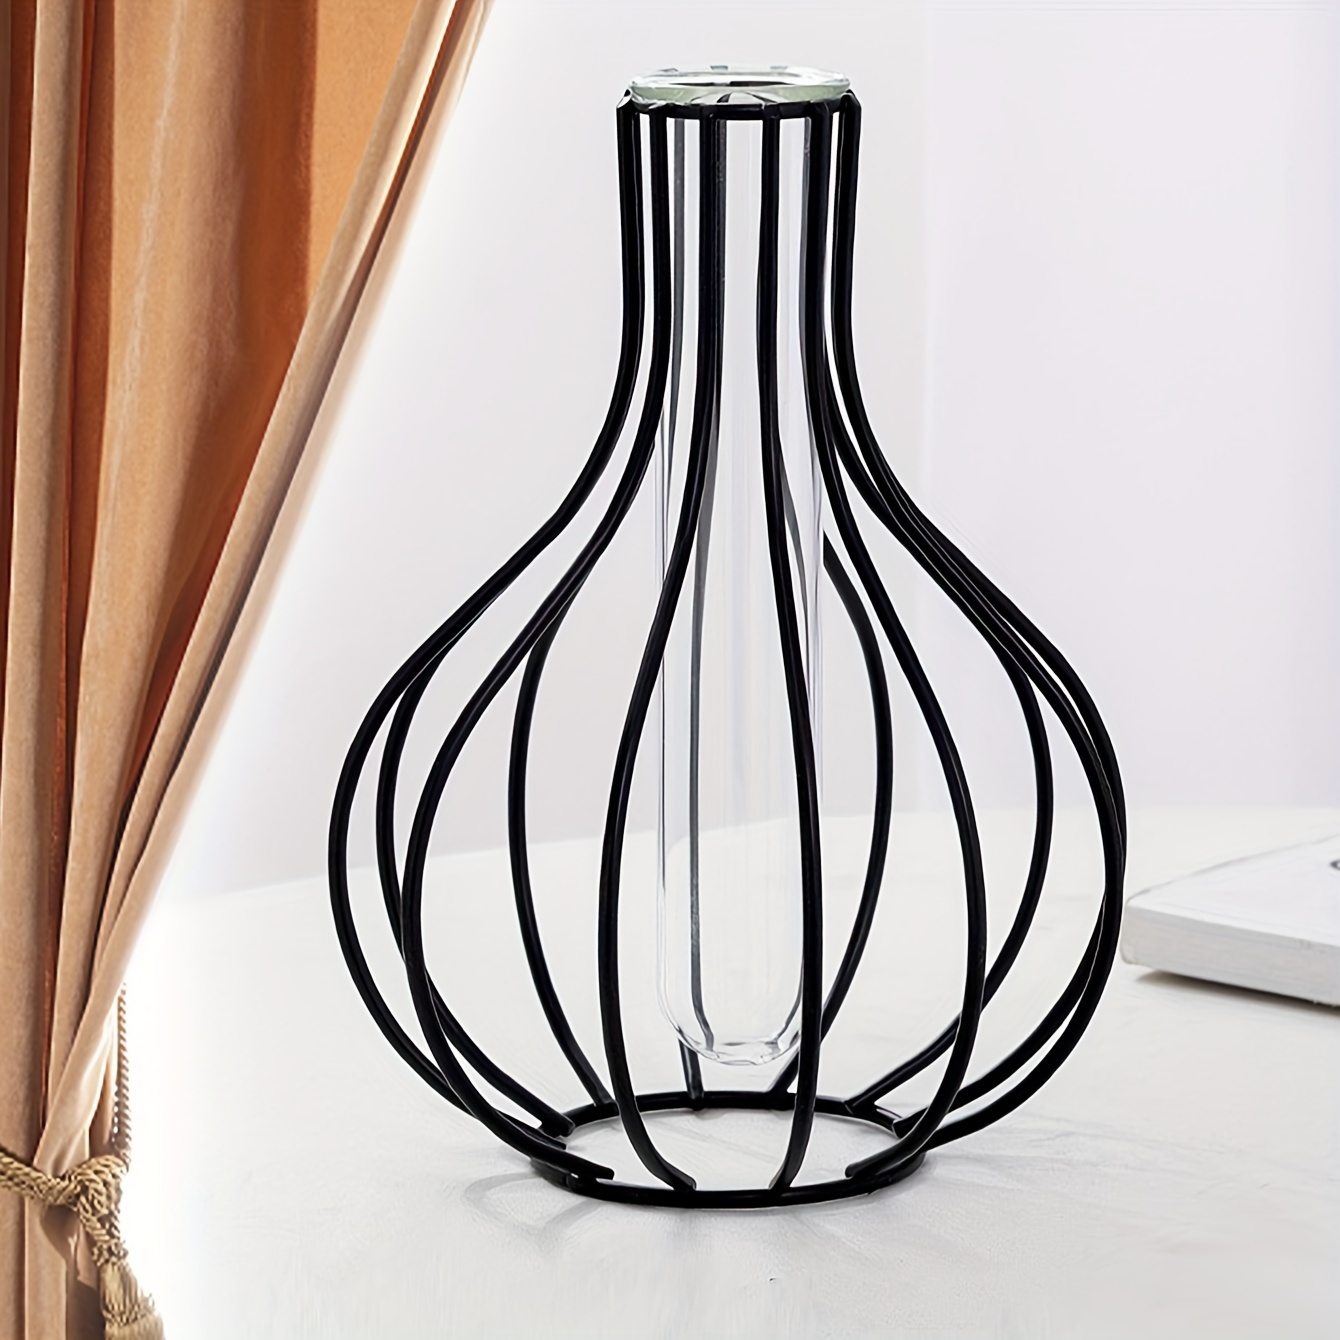 

1pc Flower Vase, Geometric Nordic Simple Glass Test Tube Metal Plant Holder, Modern Home Decor Glass Vase Hydroponic Plant Flower Vase Iron Floral Vase